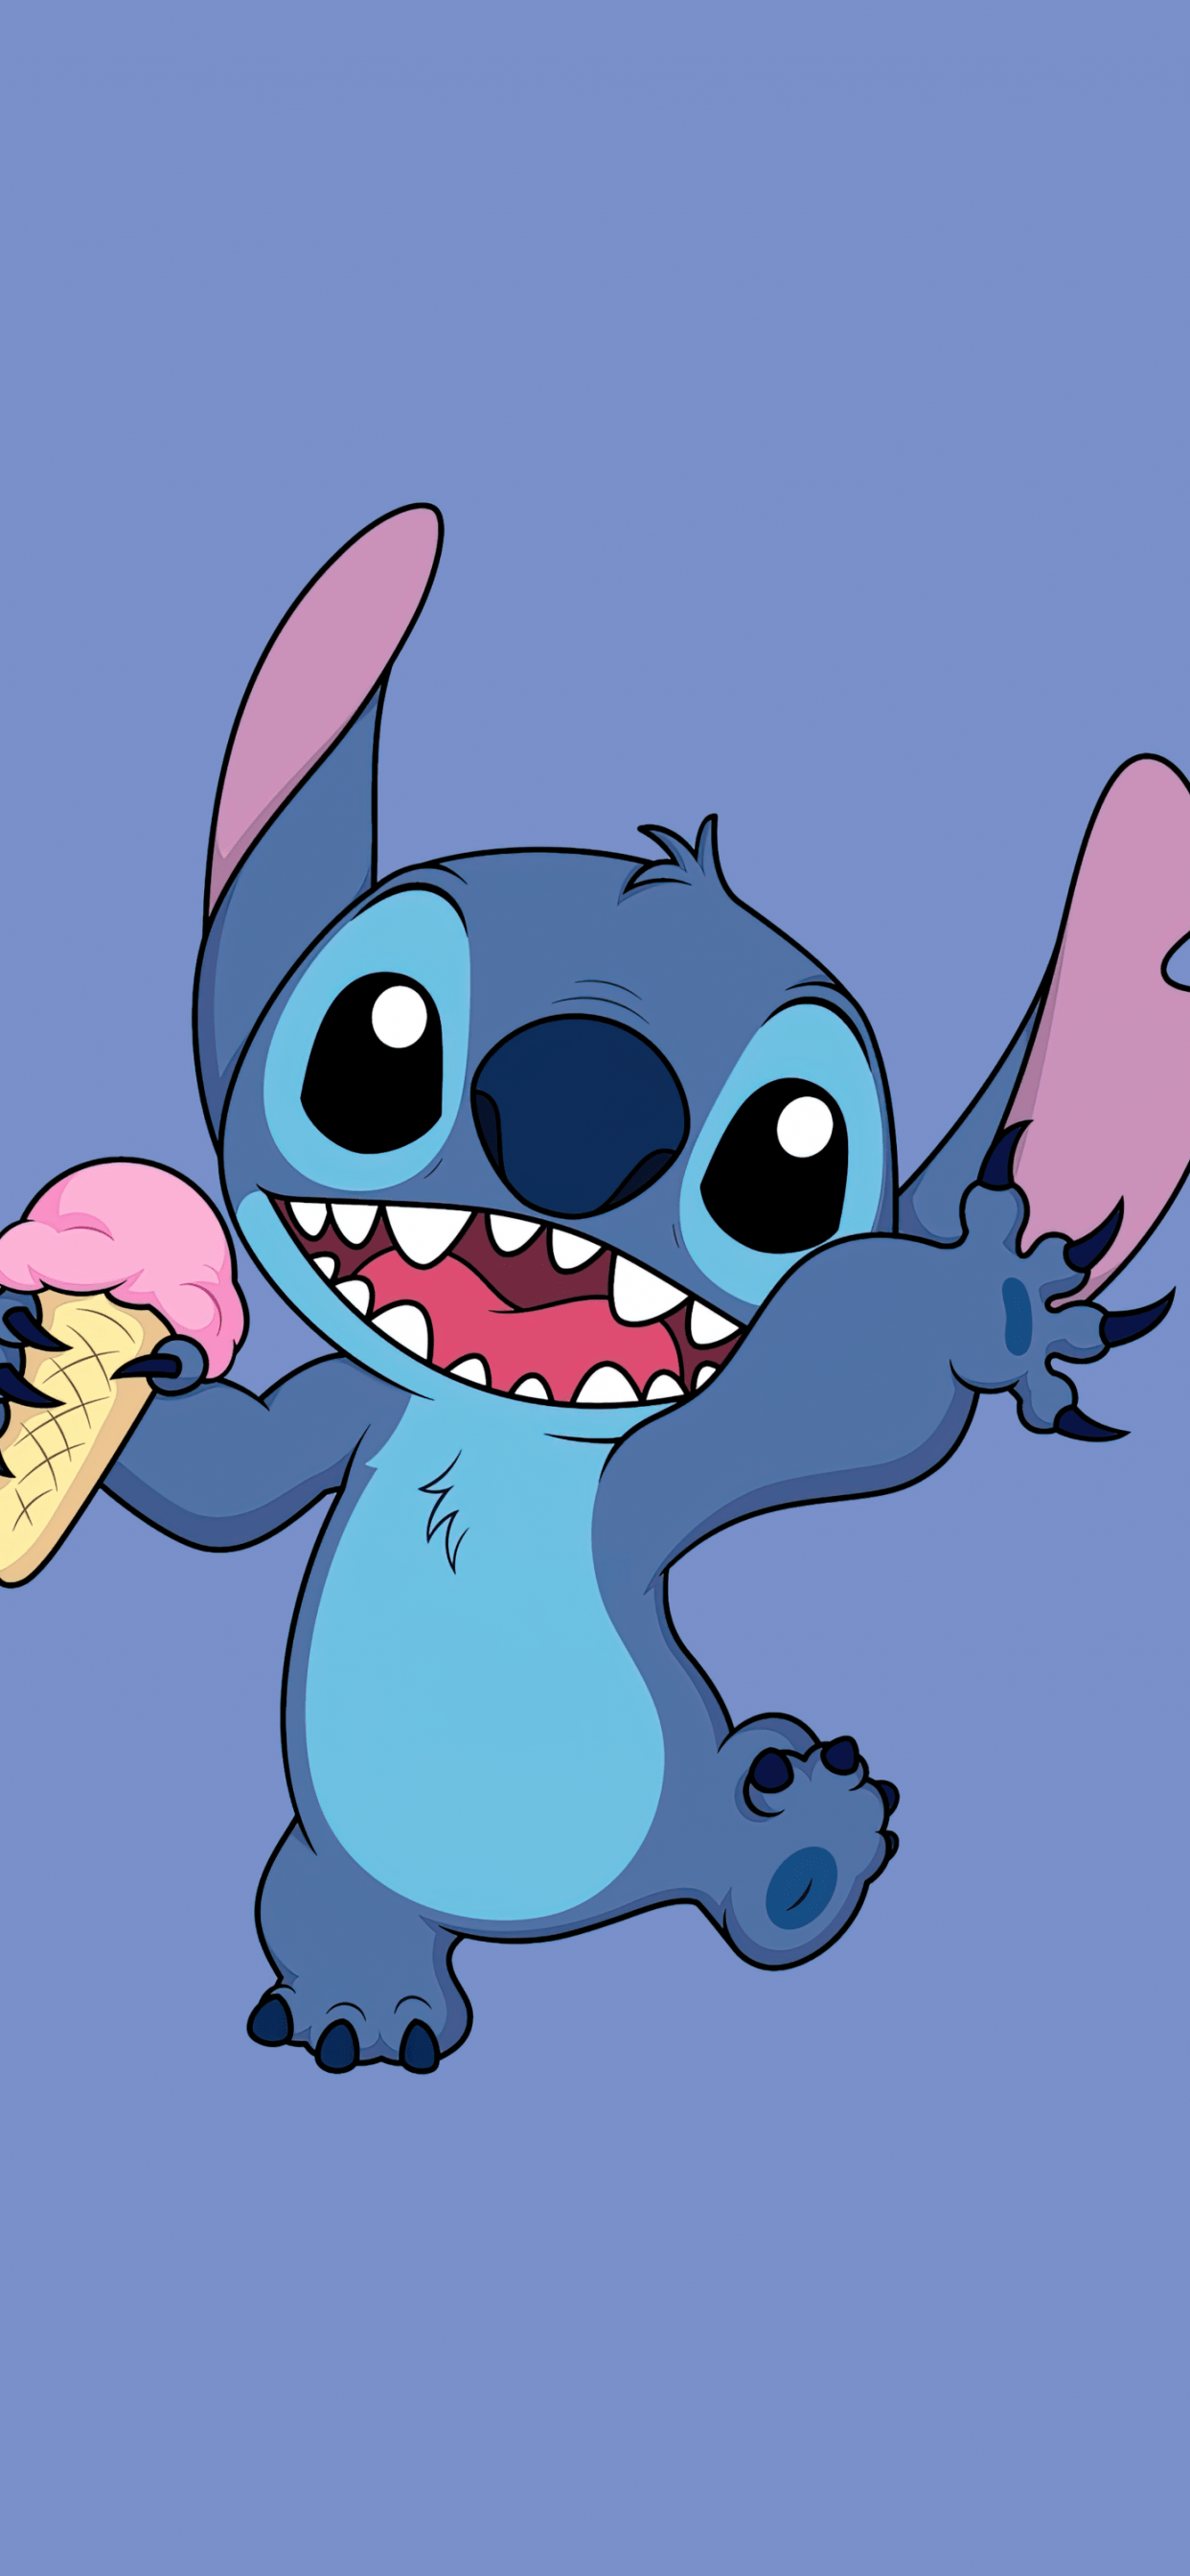 Stitch Wallpaper 4K, Disney, Cartoon, Minimal